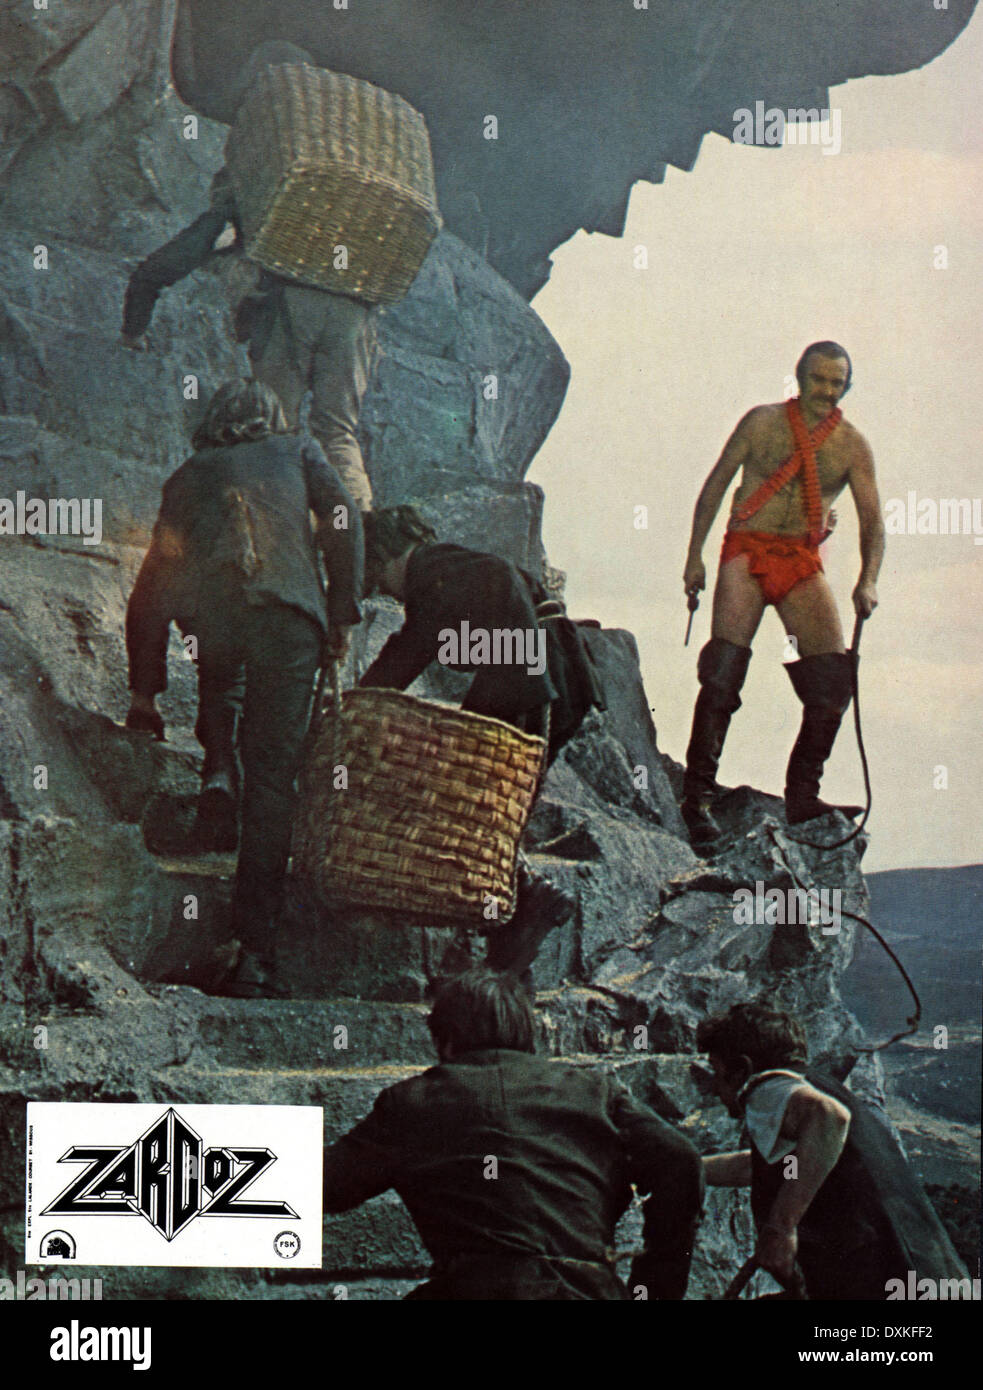 ZARDOZ (UK/EIRE 1974) SEAN CONNERY Stock Photo